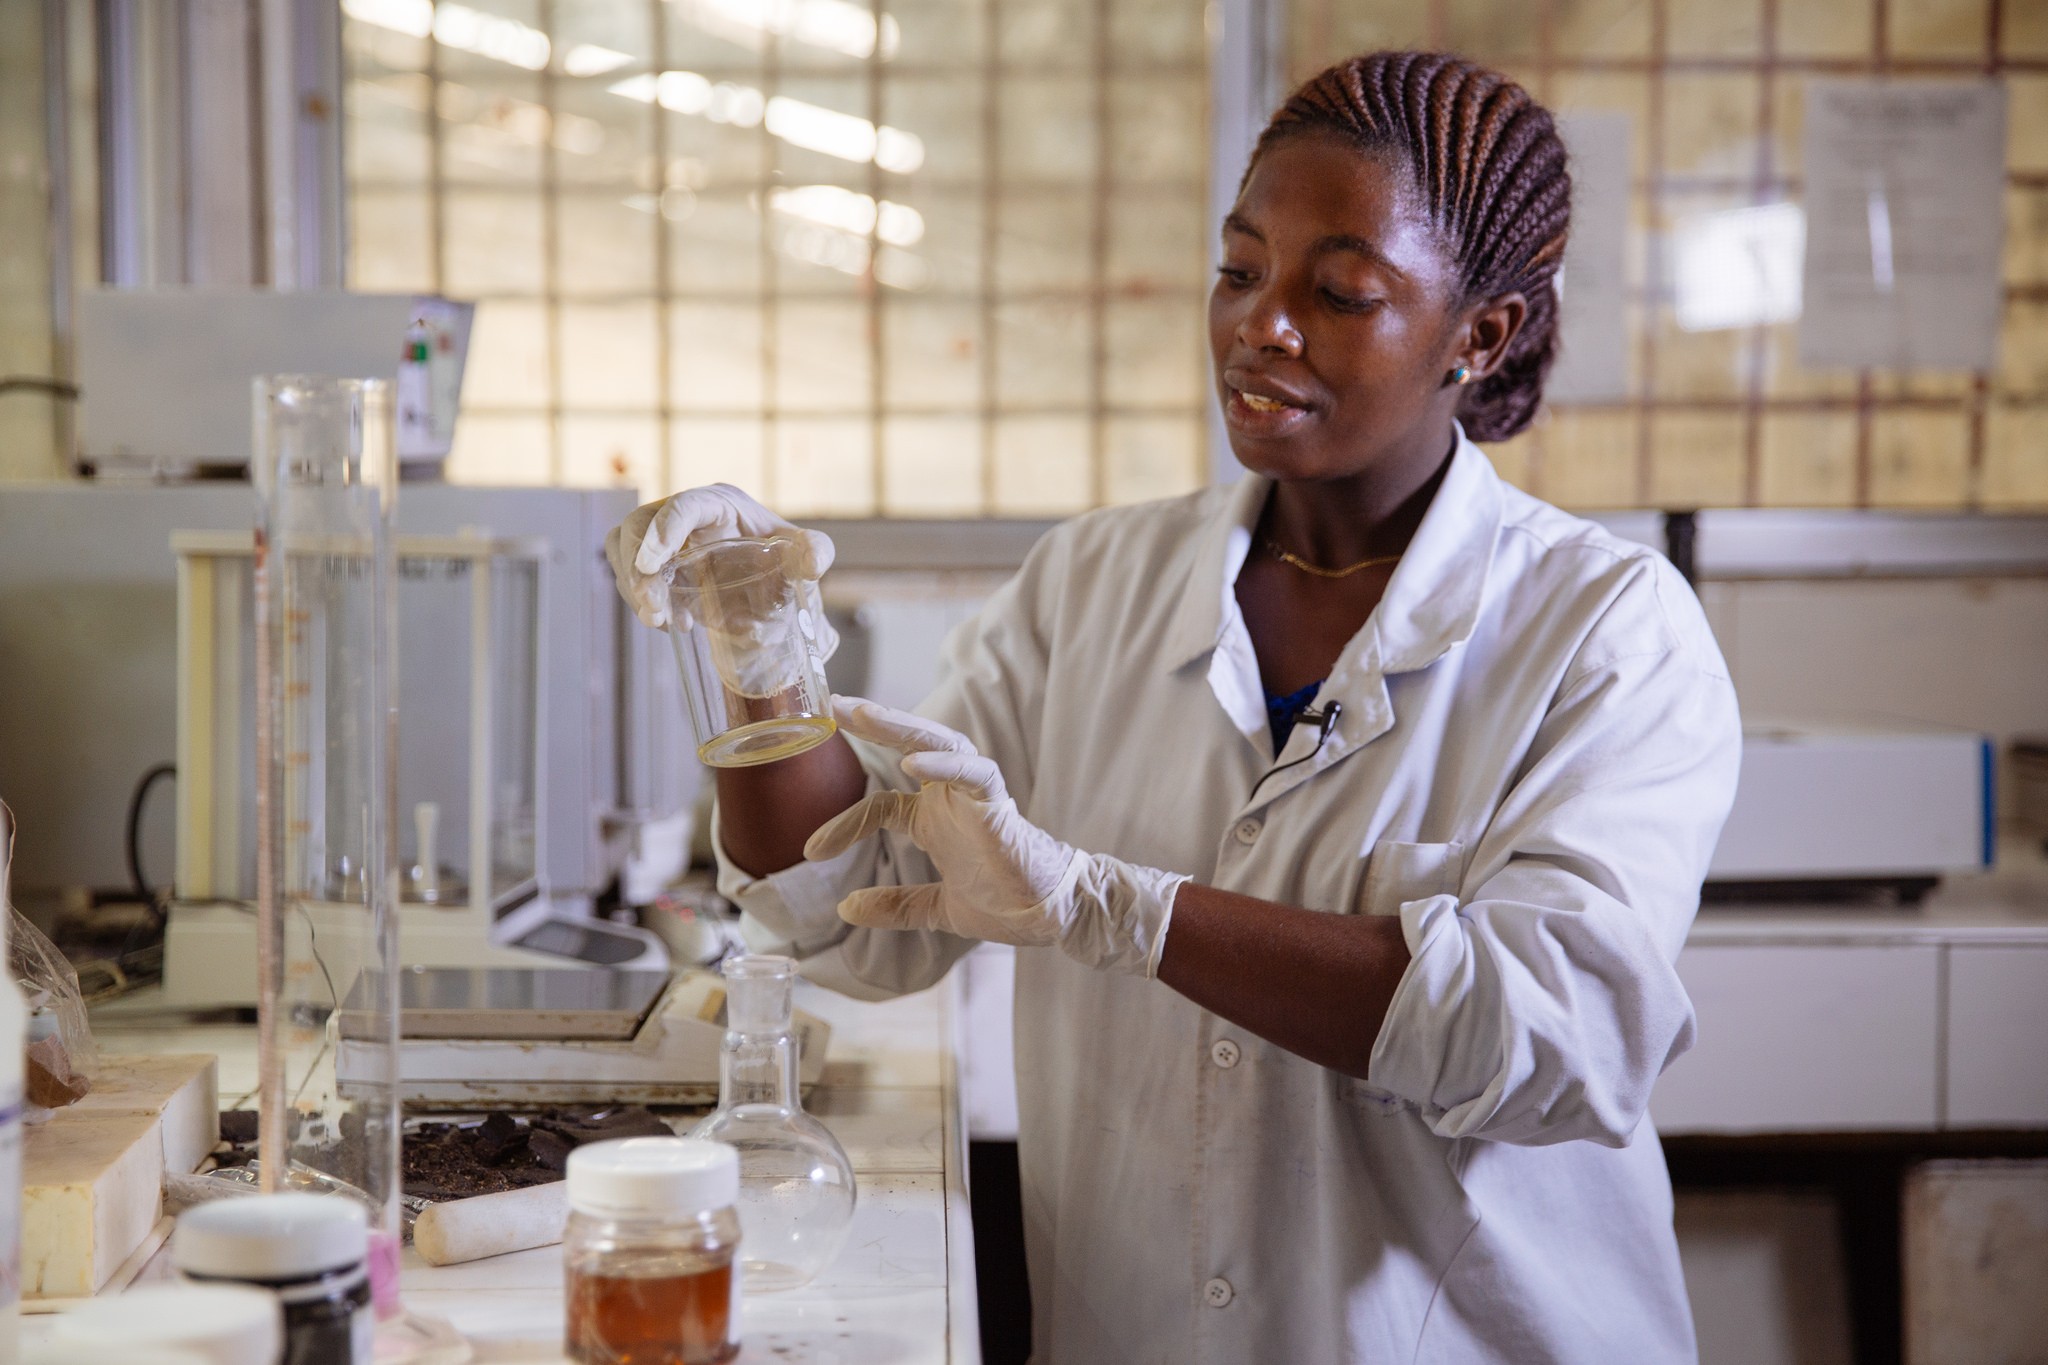 Prêmio homenageará instituições e pesquisadores que incentivam a participação de meninas e adolescentes na ciência (Foto: Flickr/IFPRI -IMAGES)